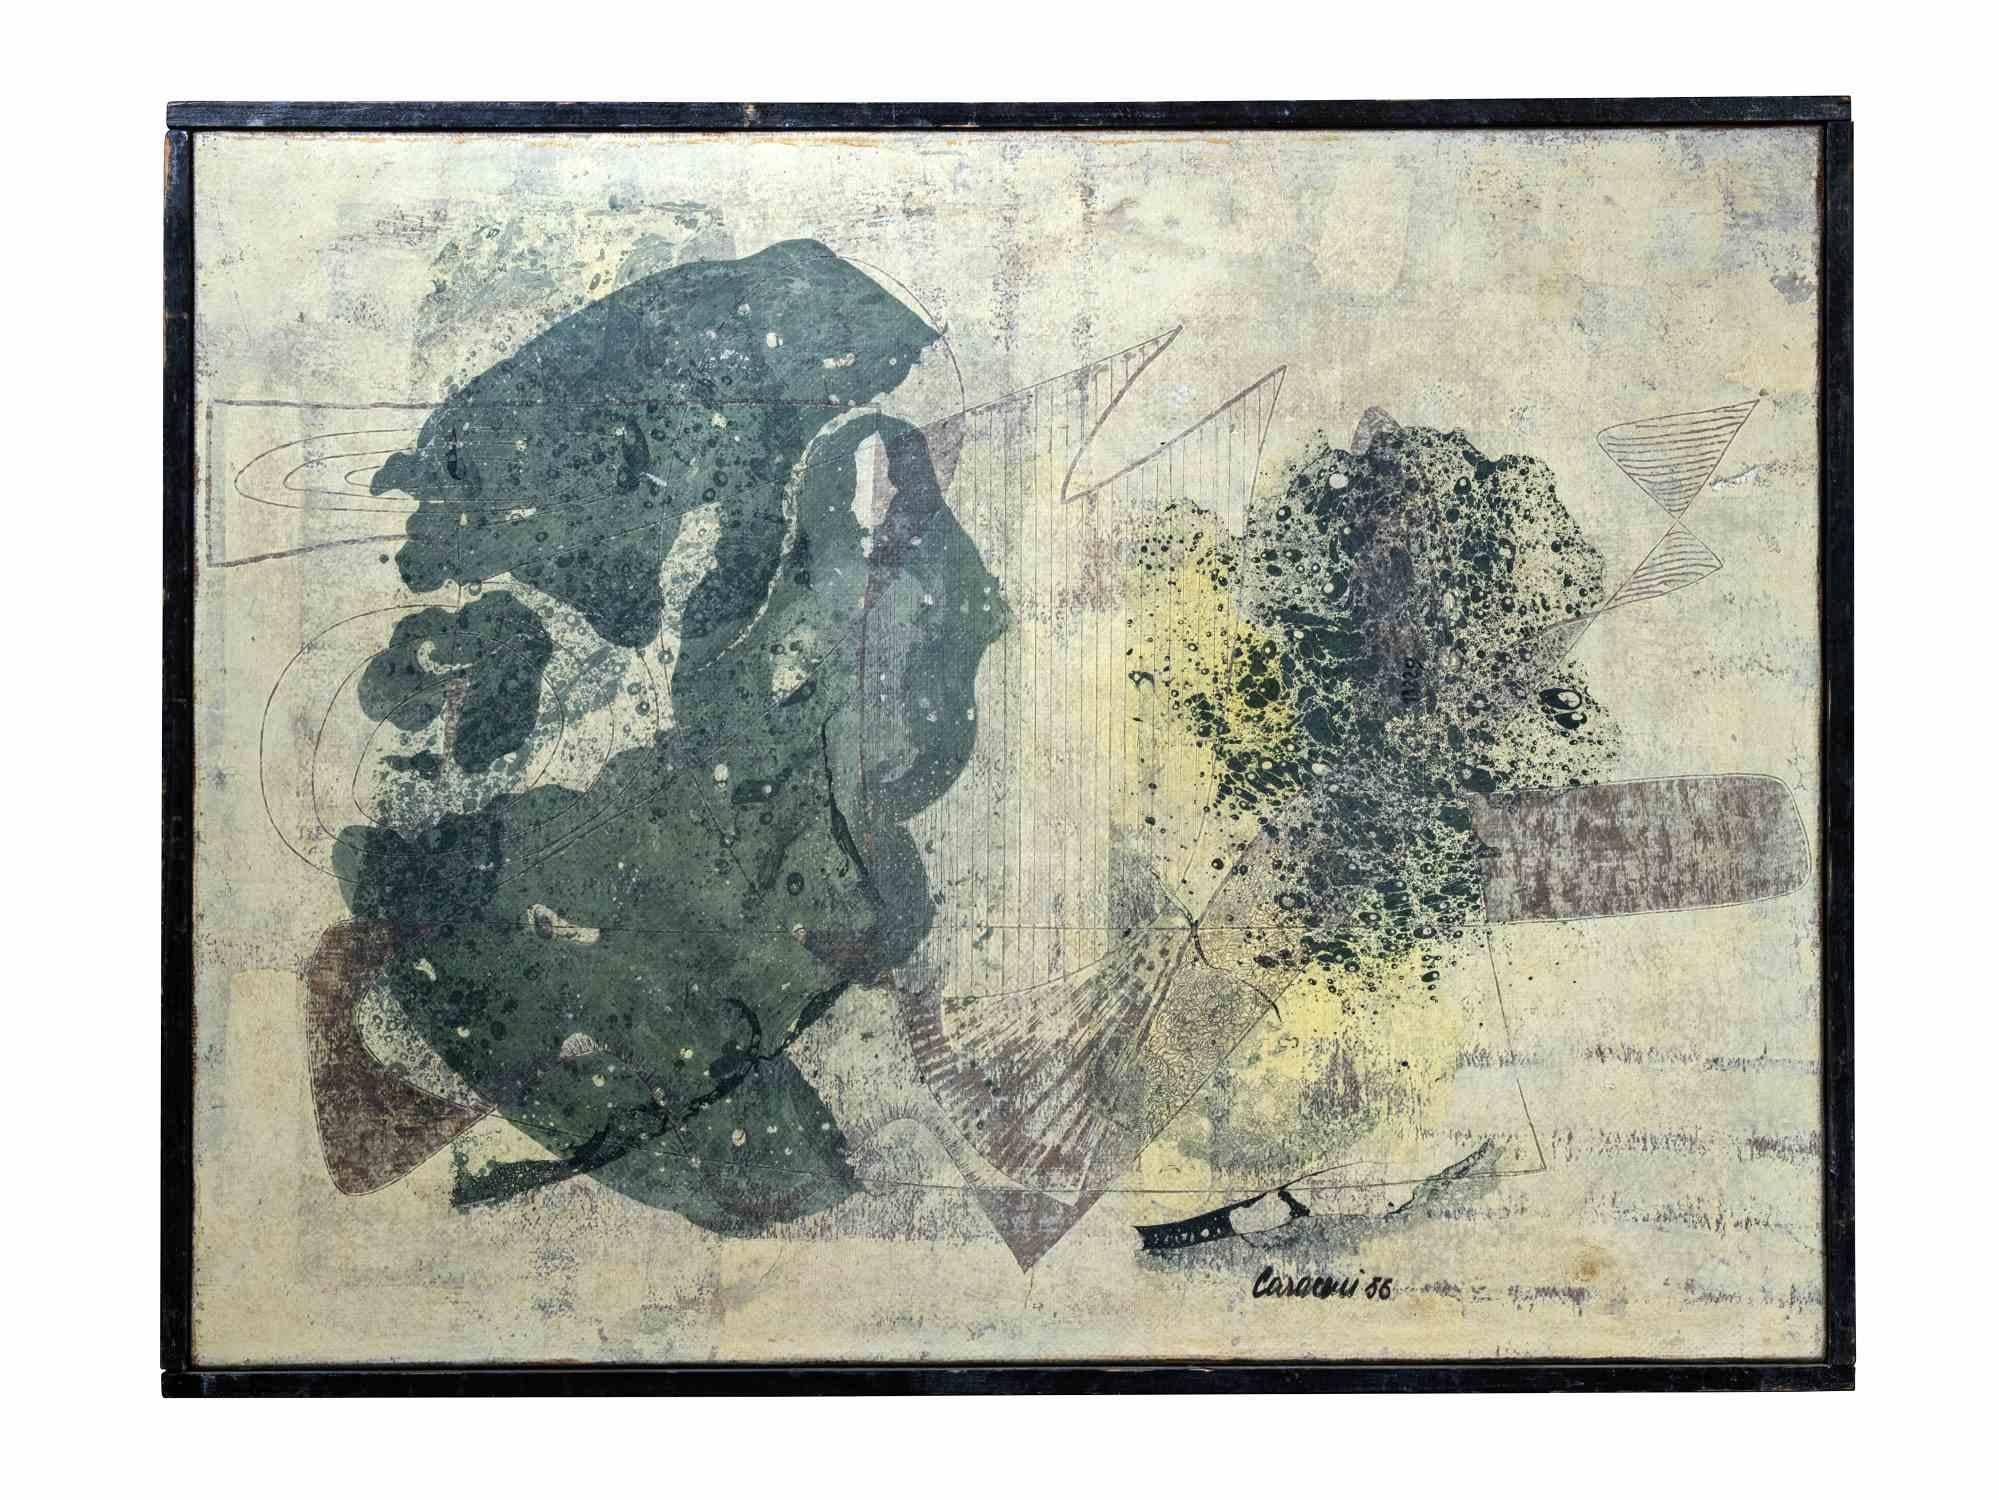 Untitled ist ein Kunstwerk von Ezio Bruno Caraceni aus dem Jahr 1956. 

Mischtechnik auf Leinwand, 52 x 67 cm.

Handsigniert und datiert unten rechts.

Gute Bedingungen 